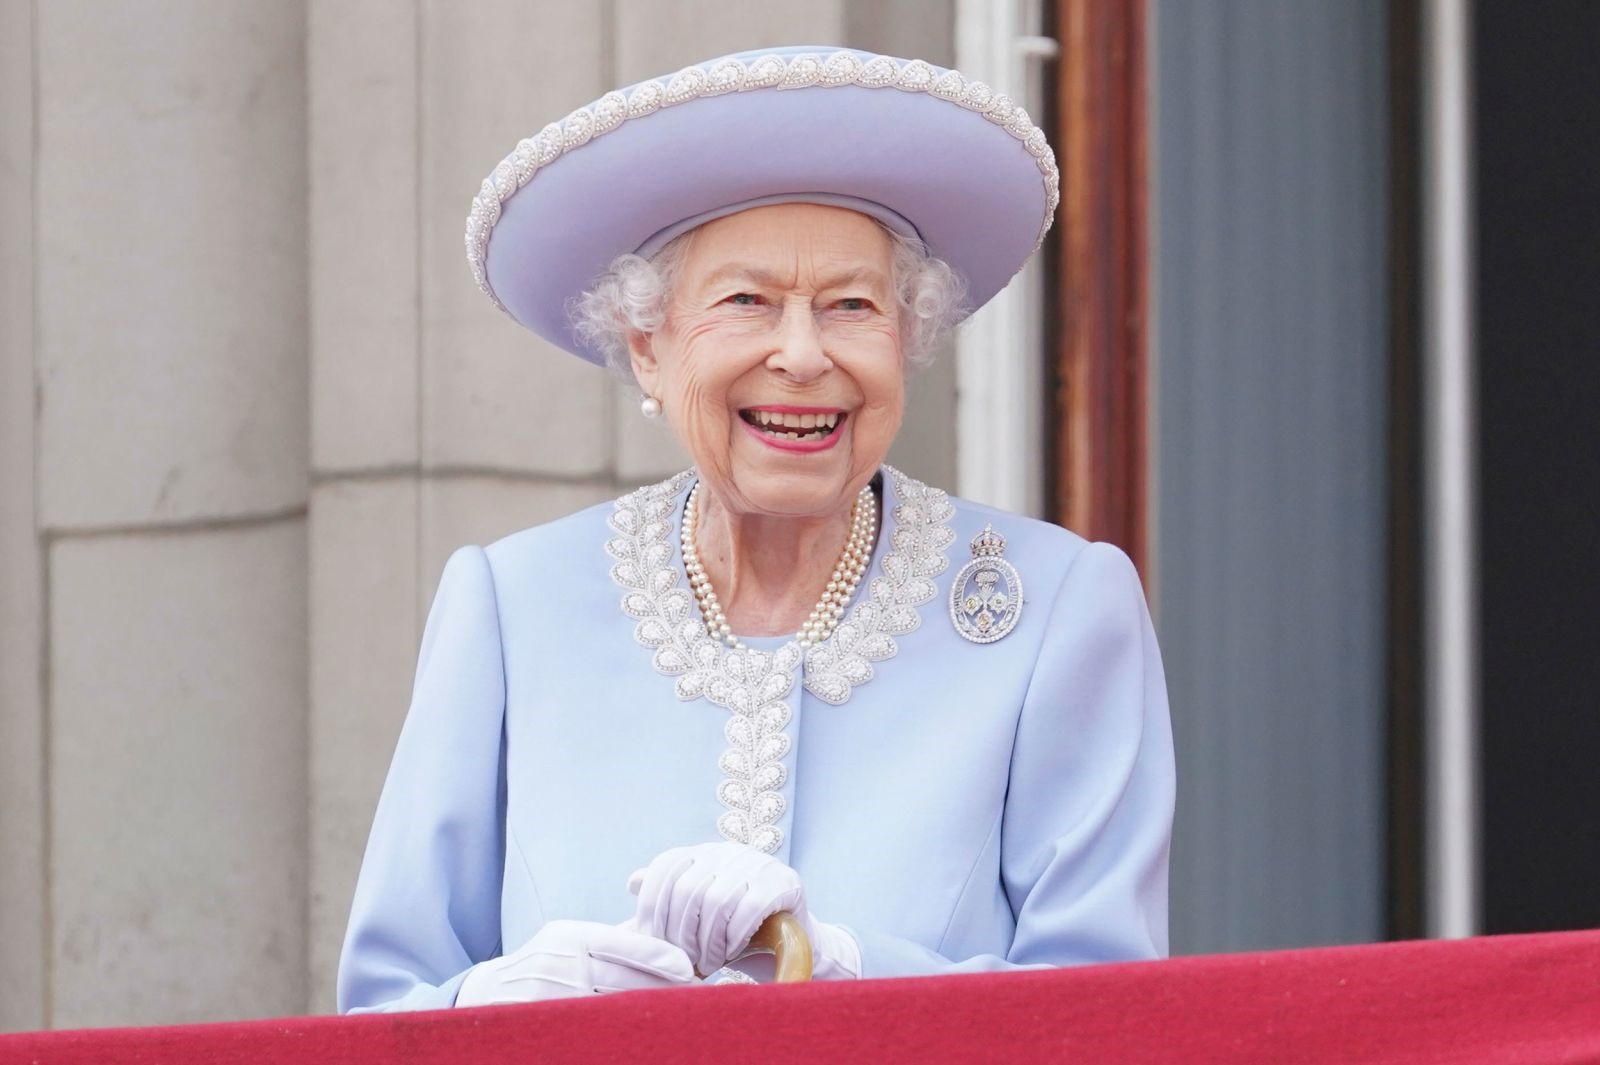 Nữ hoàng trong Đại lễ Bạch kim tháng 6 năm 2022 kỷ niệm 70 năm trị vì. Ảnh: Getty